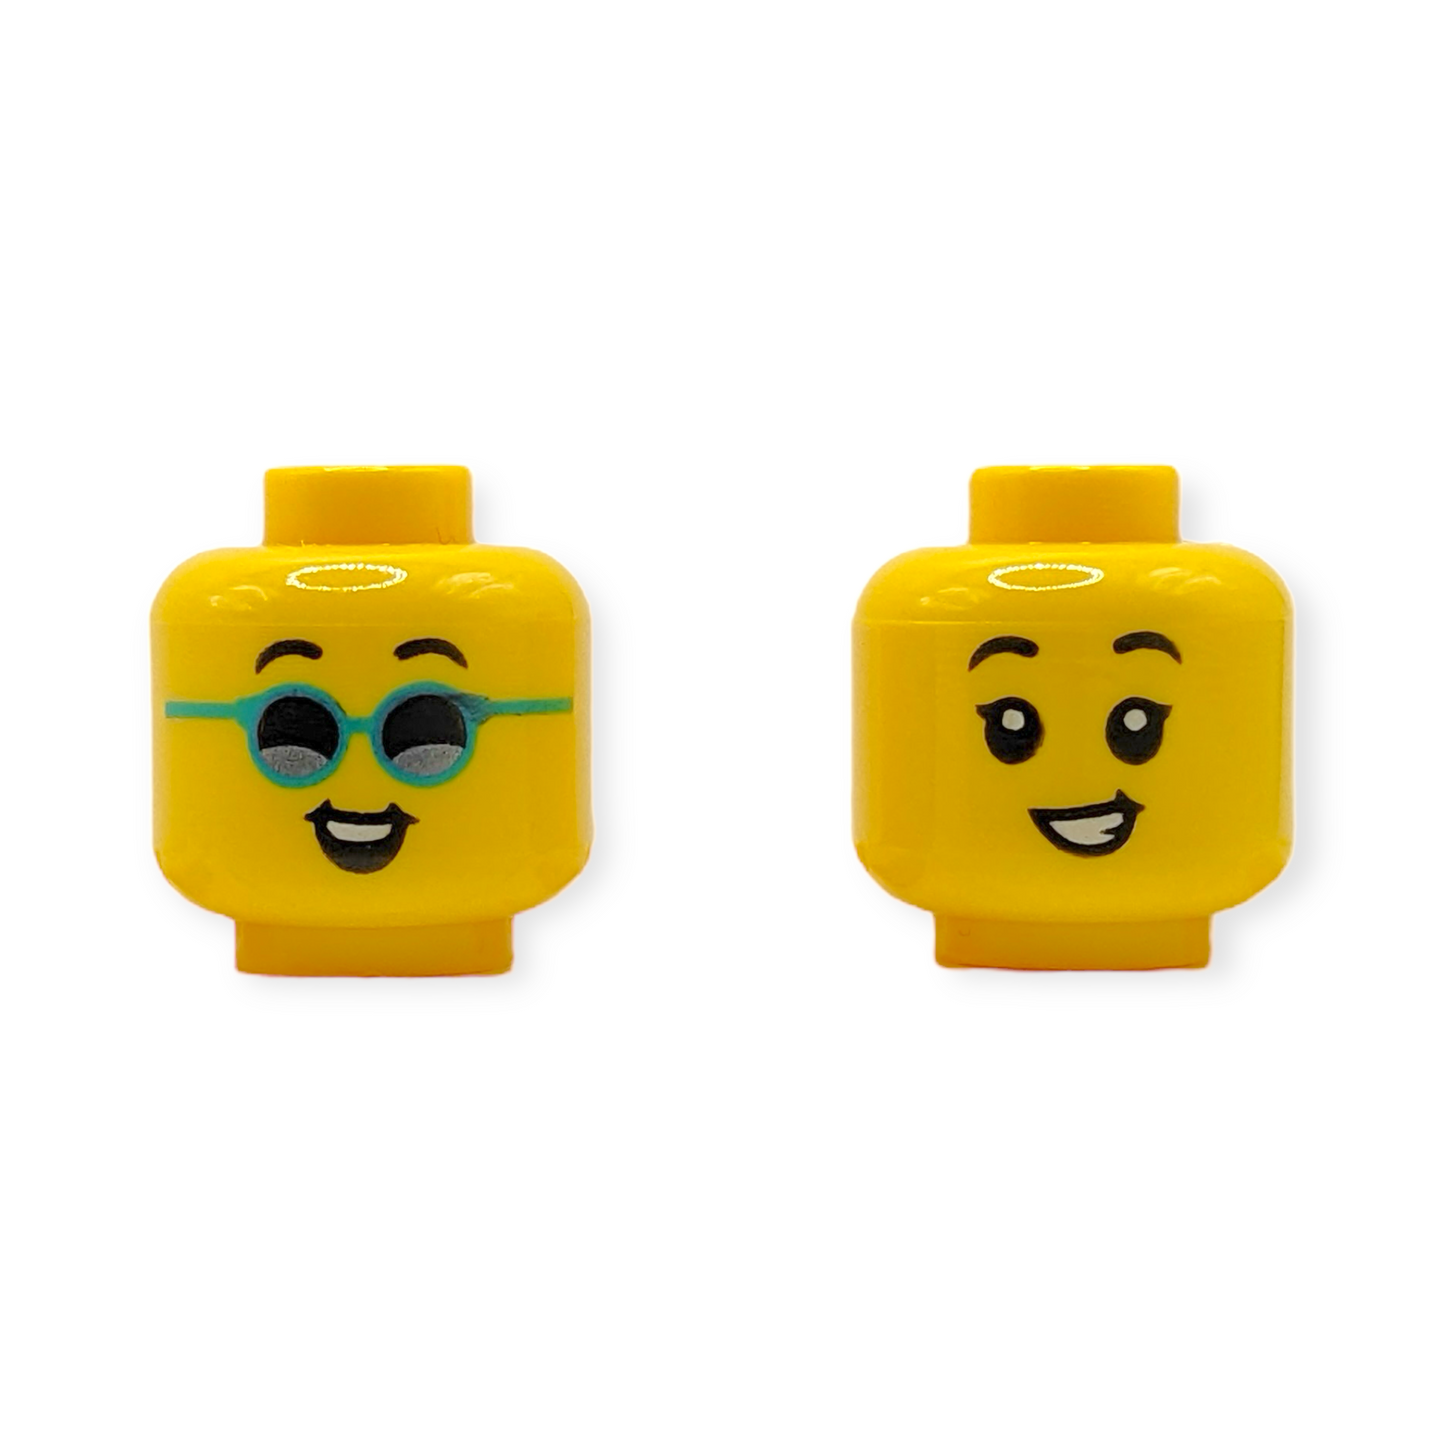 LEGO Head - 3727 Dual Sided Child, Black Eyebrows